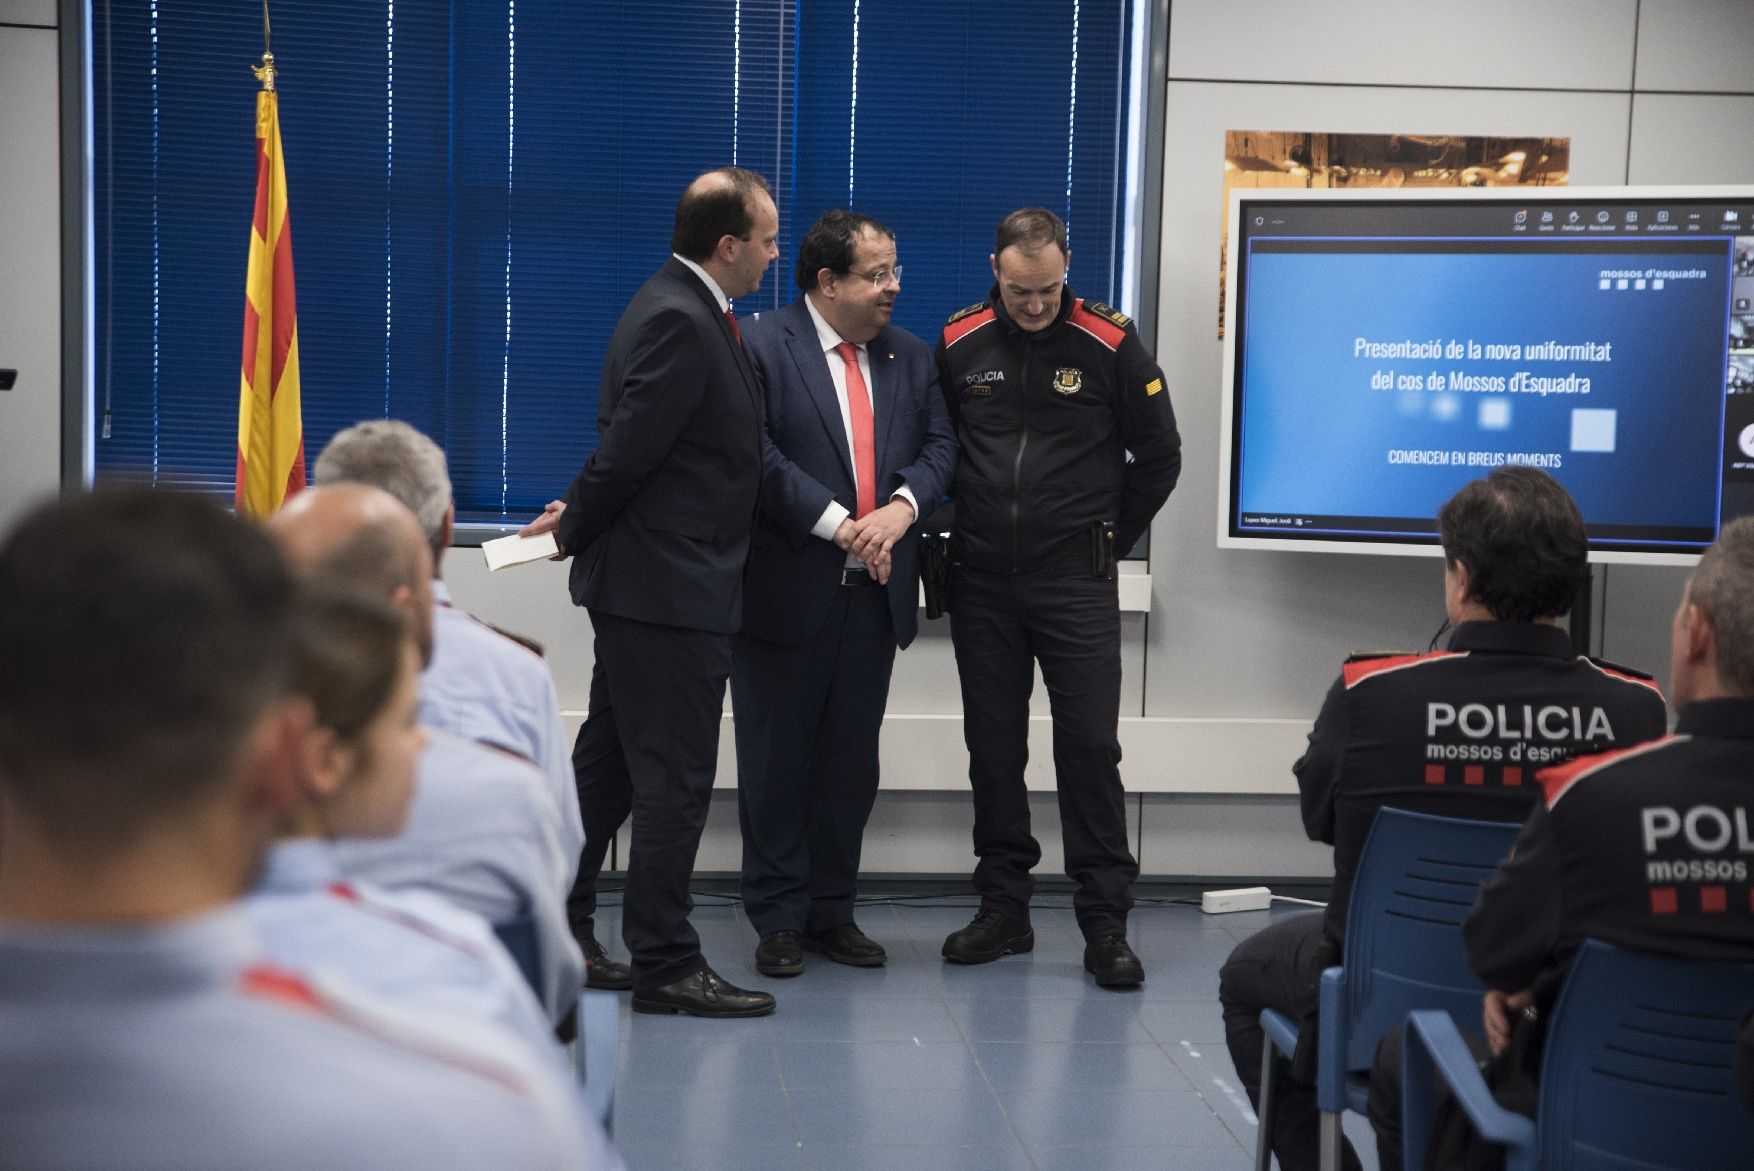 Les imatges de la presentació del nou uniforme de Mossos a Manresa